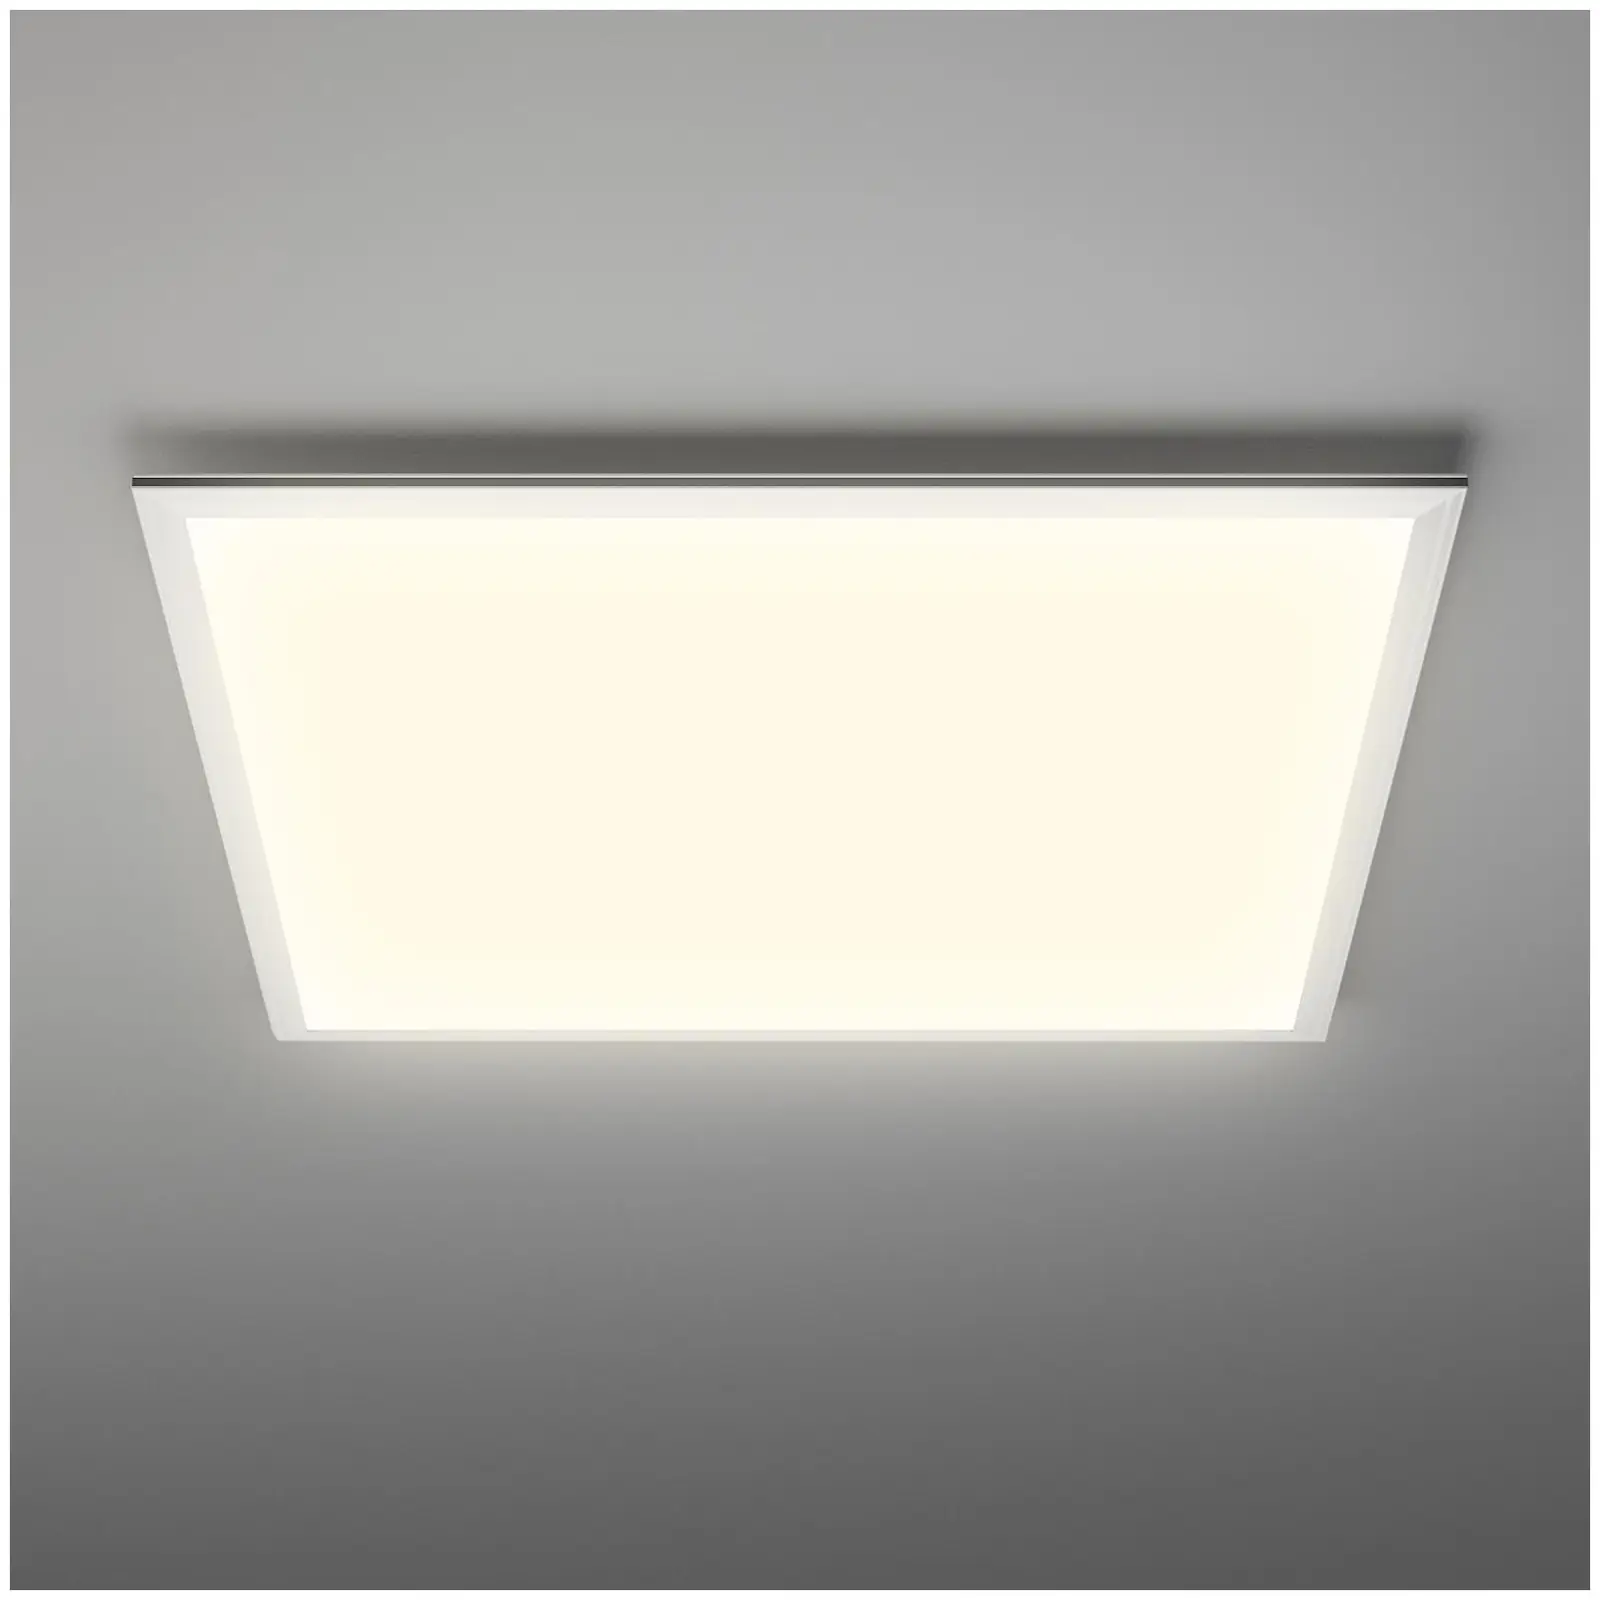 Painel LED de teto - 40 W - 4000K - 3800 lm - 95 lm/W